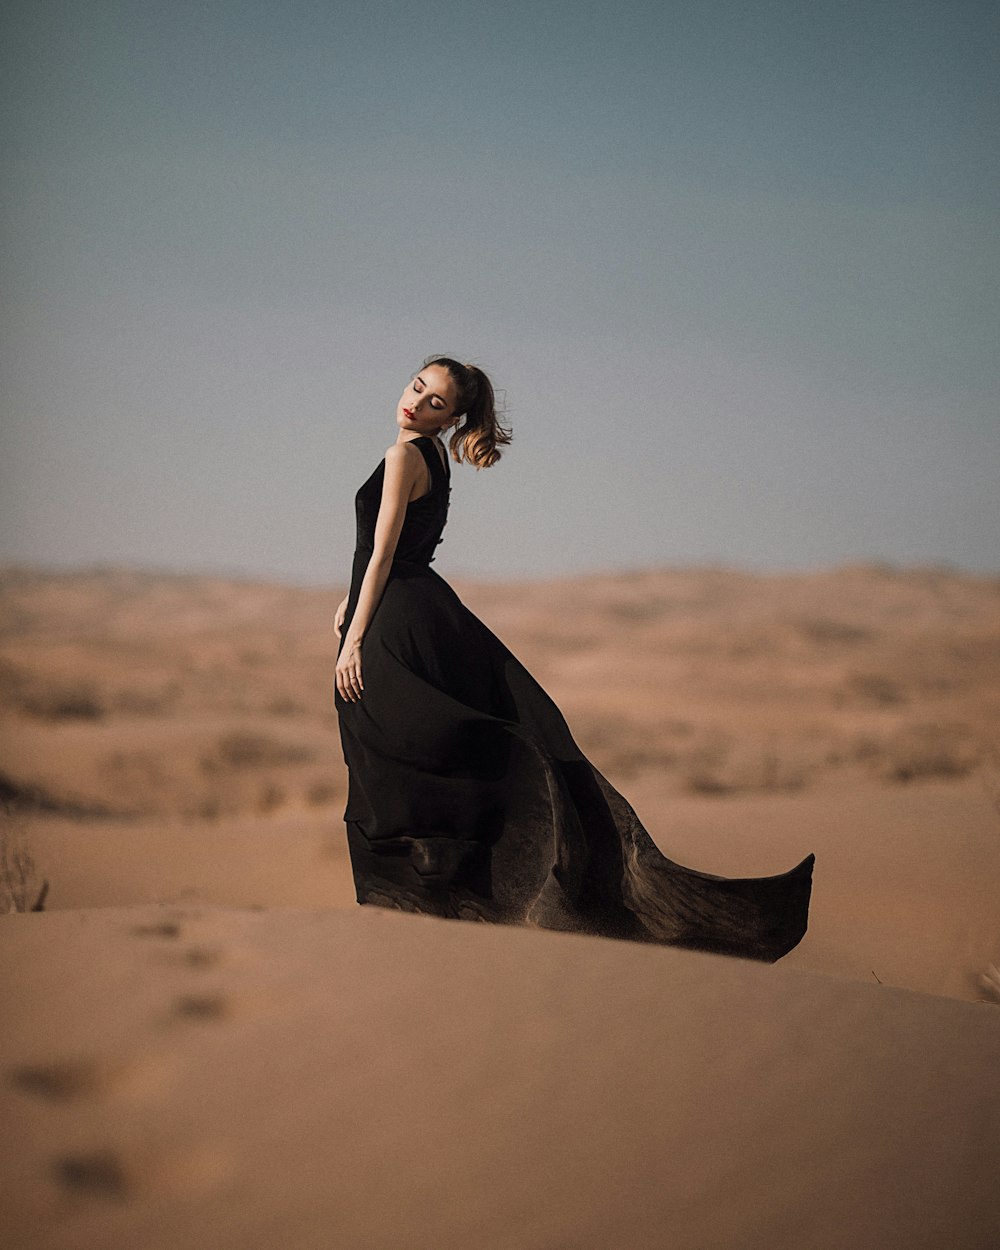 검은 드레스를 입은 여자가 사막에 서 있다